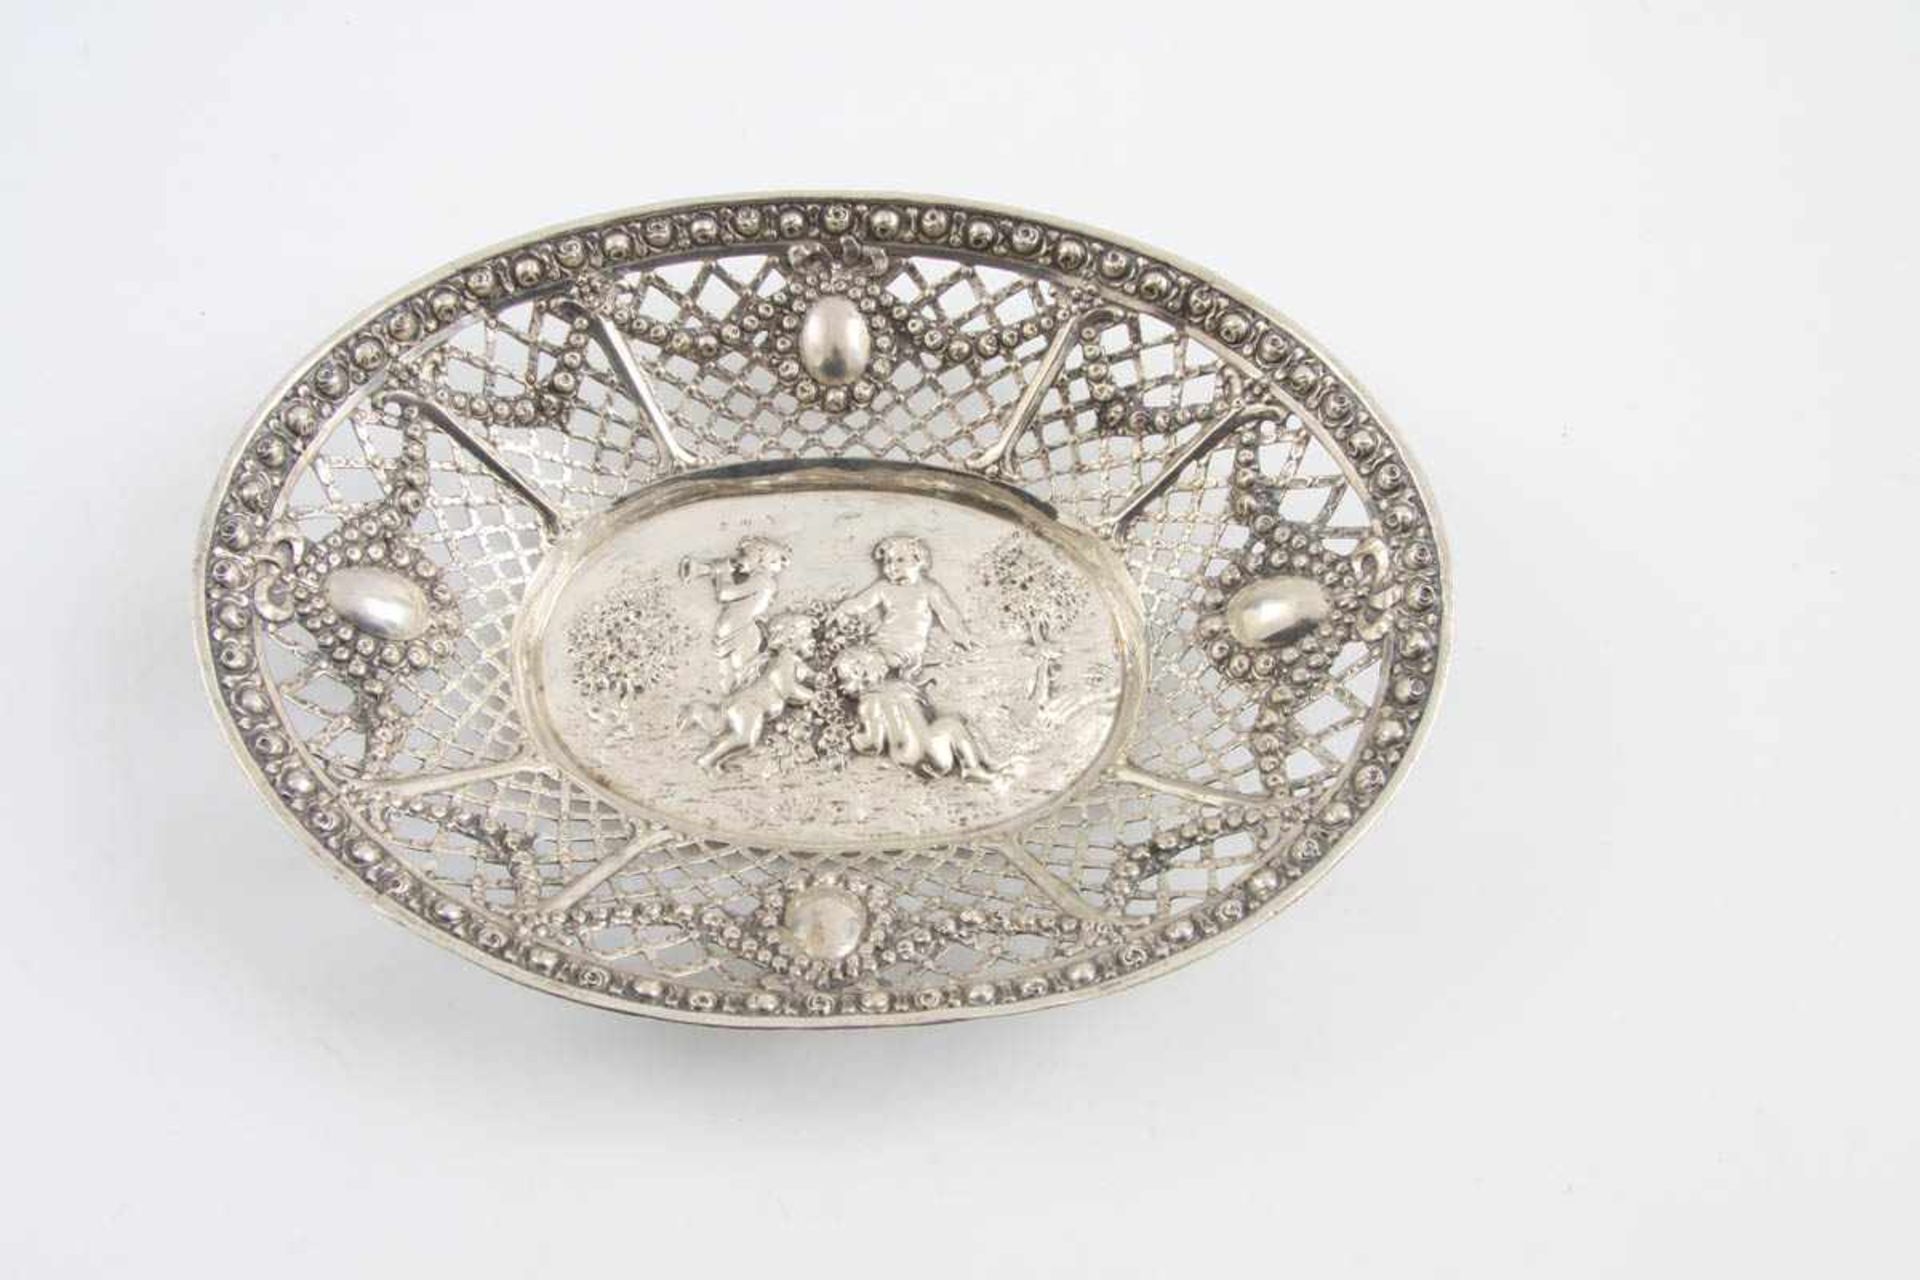 Ovale Gebäckschale, um 1900 800er Silber, Ovaler Spiegel mit spielenden Putti reliefiert. Von feinem